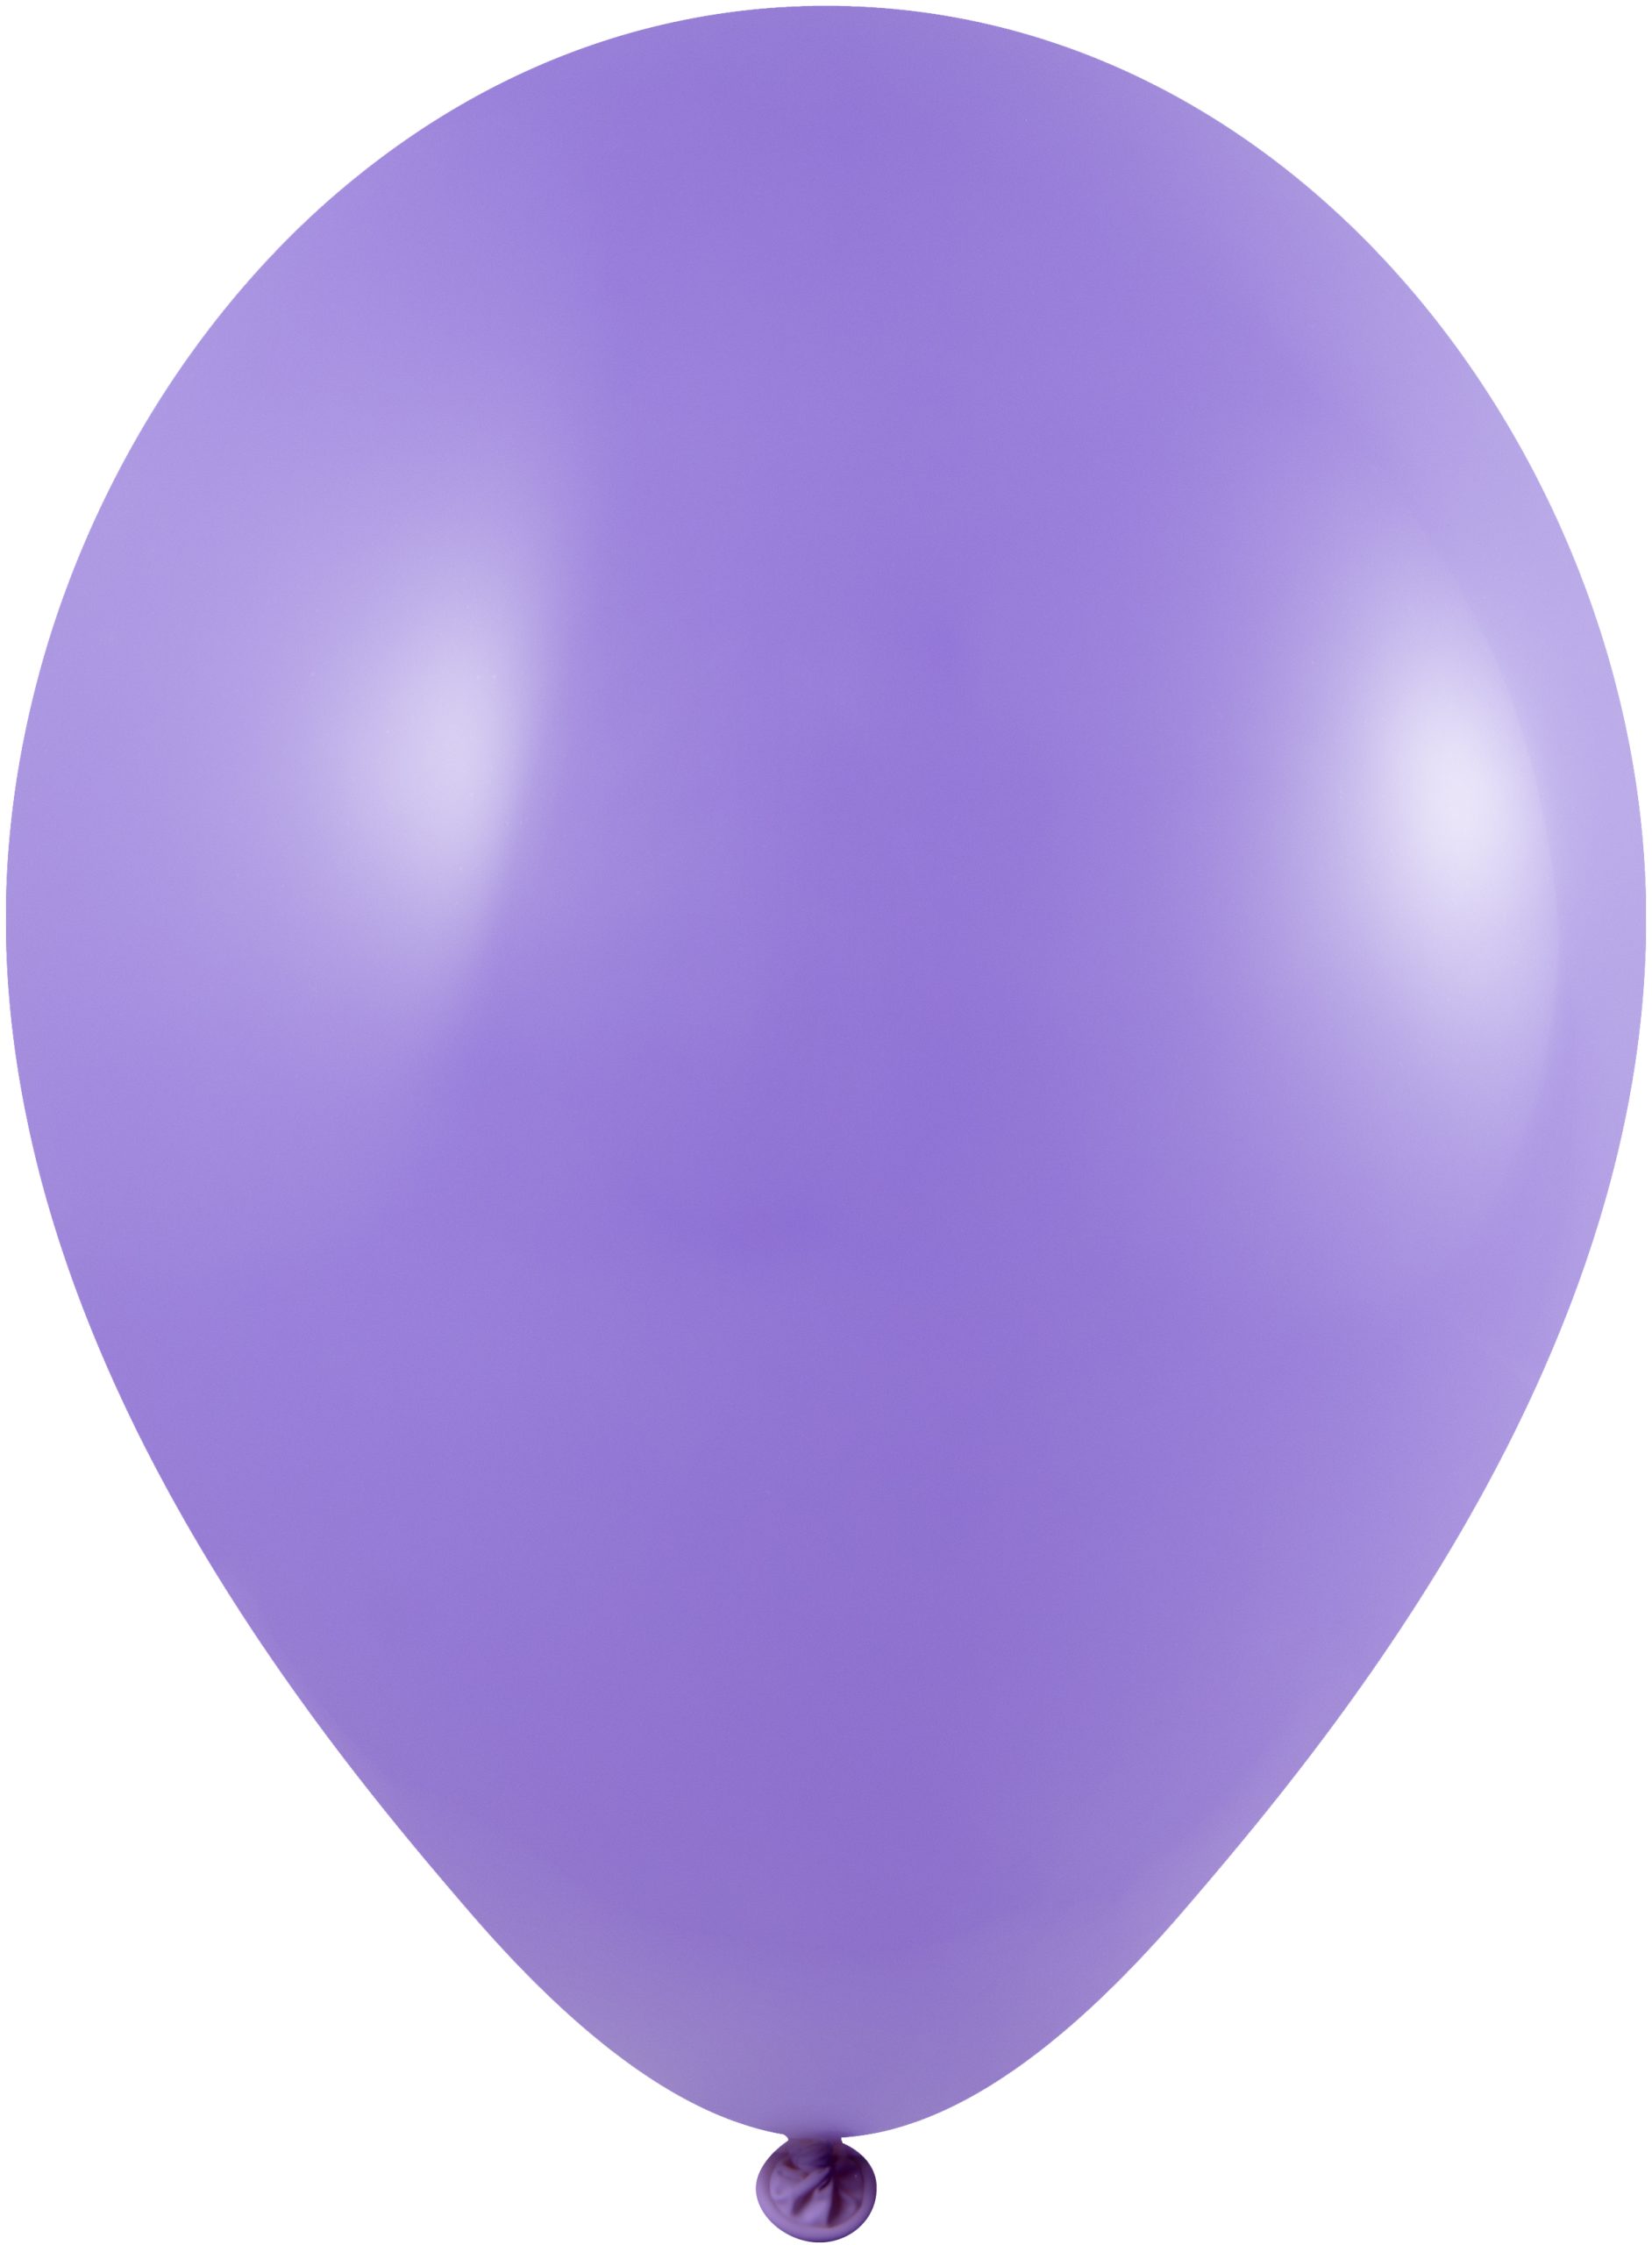 Pastelkleurige ballonen  - Ø 33 cm  